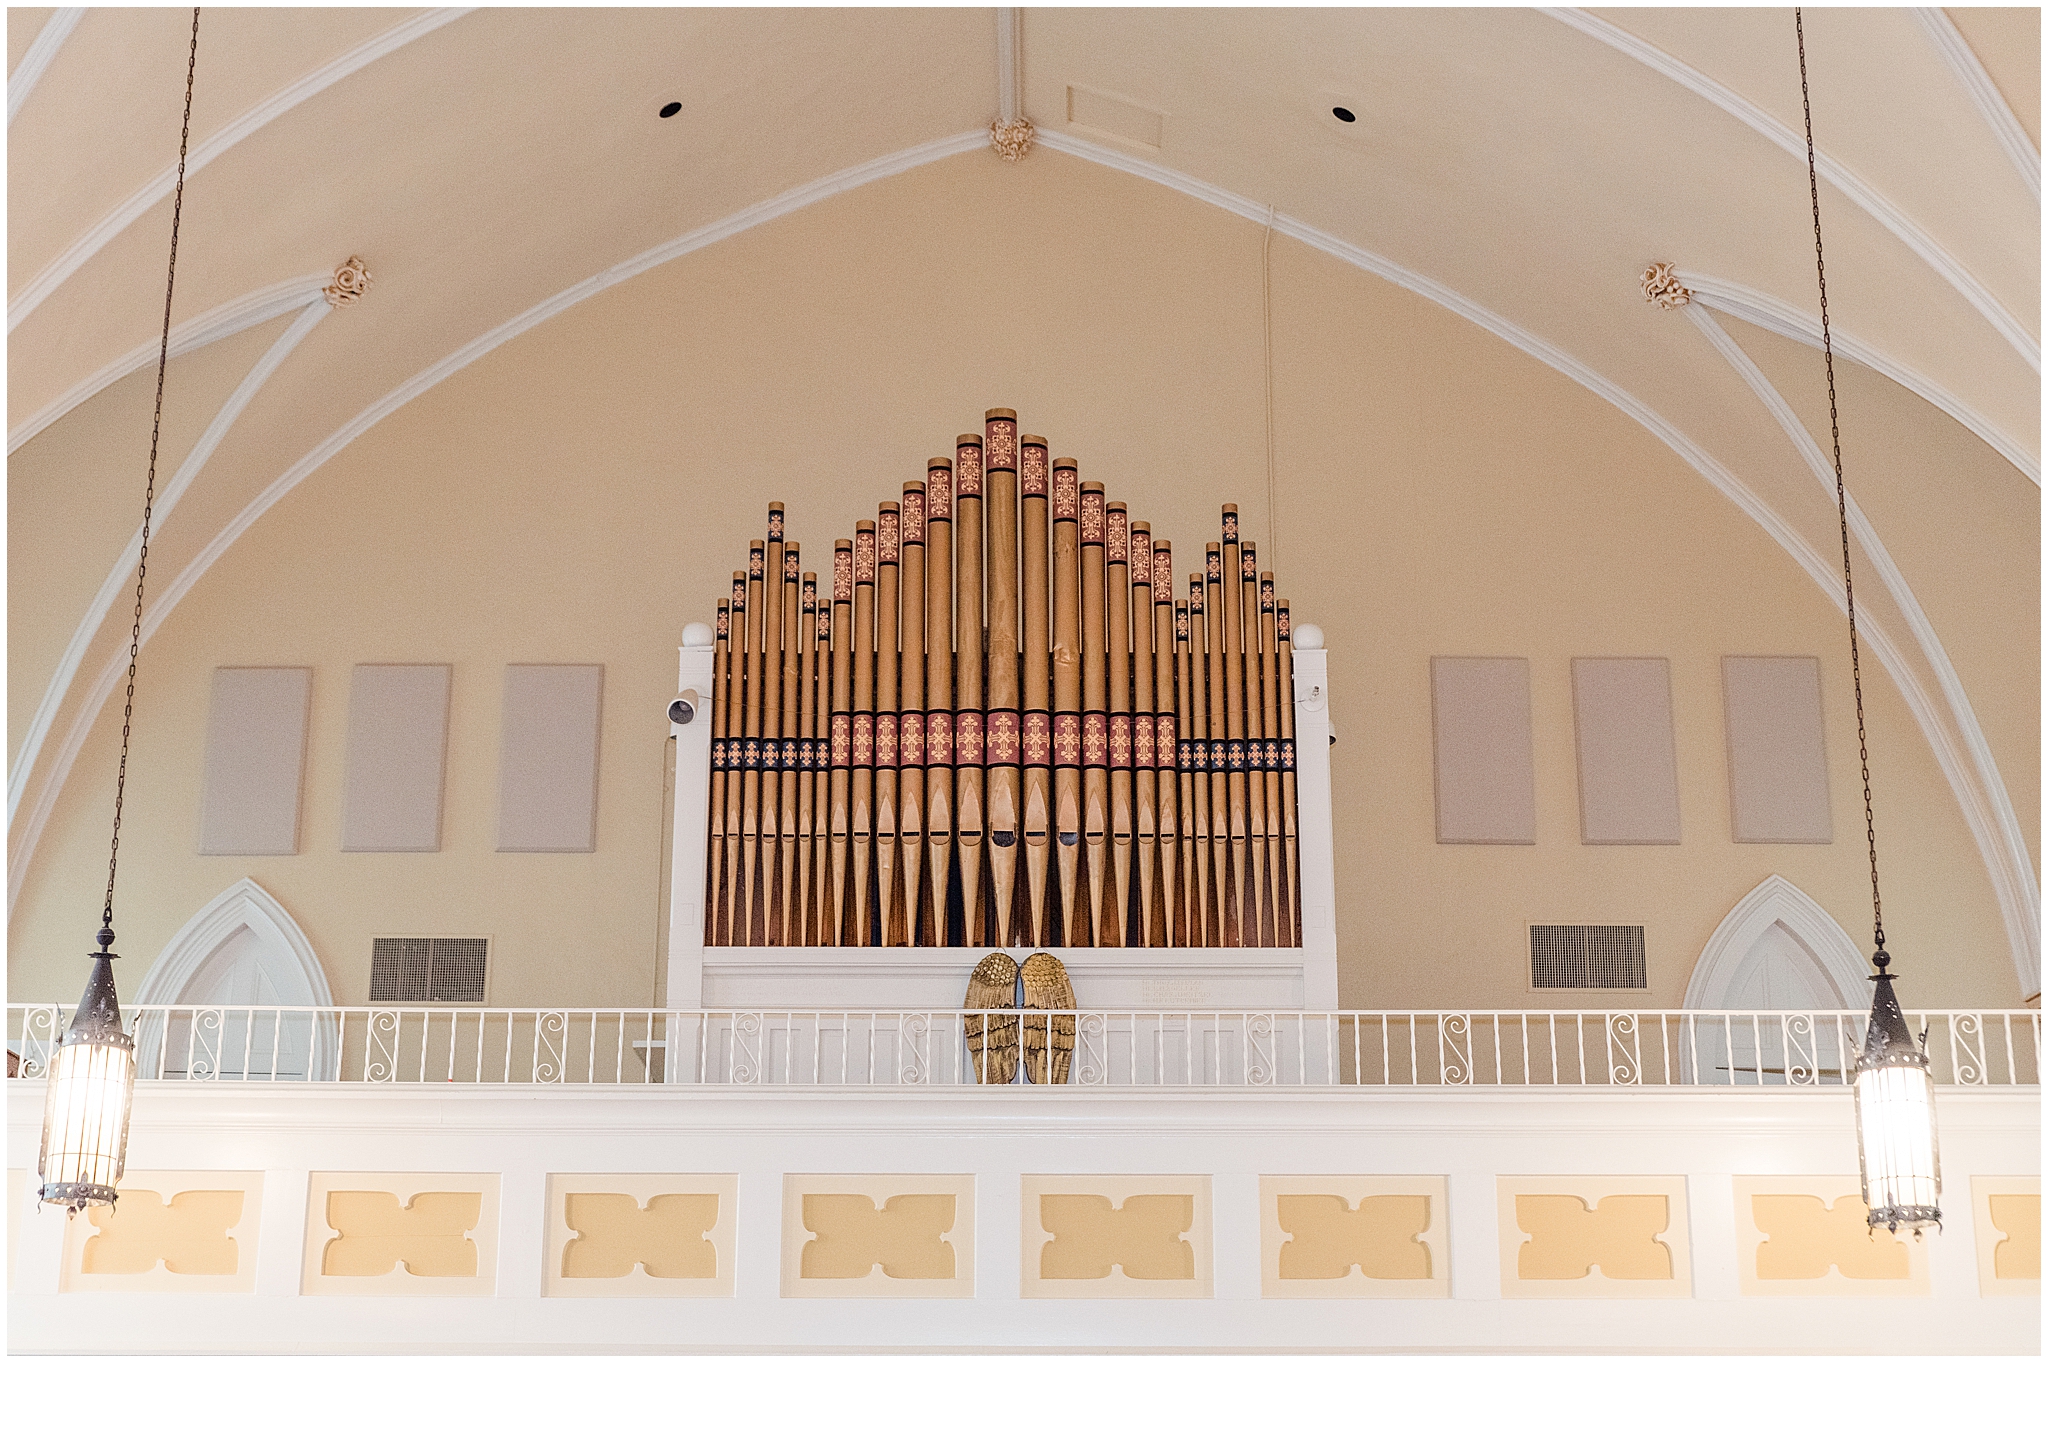 The Elizabeth Wedding Venue pipe organ, in Franklin, KY